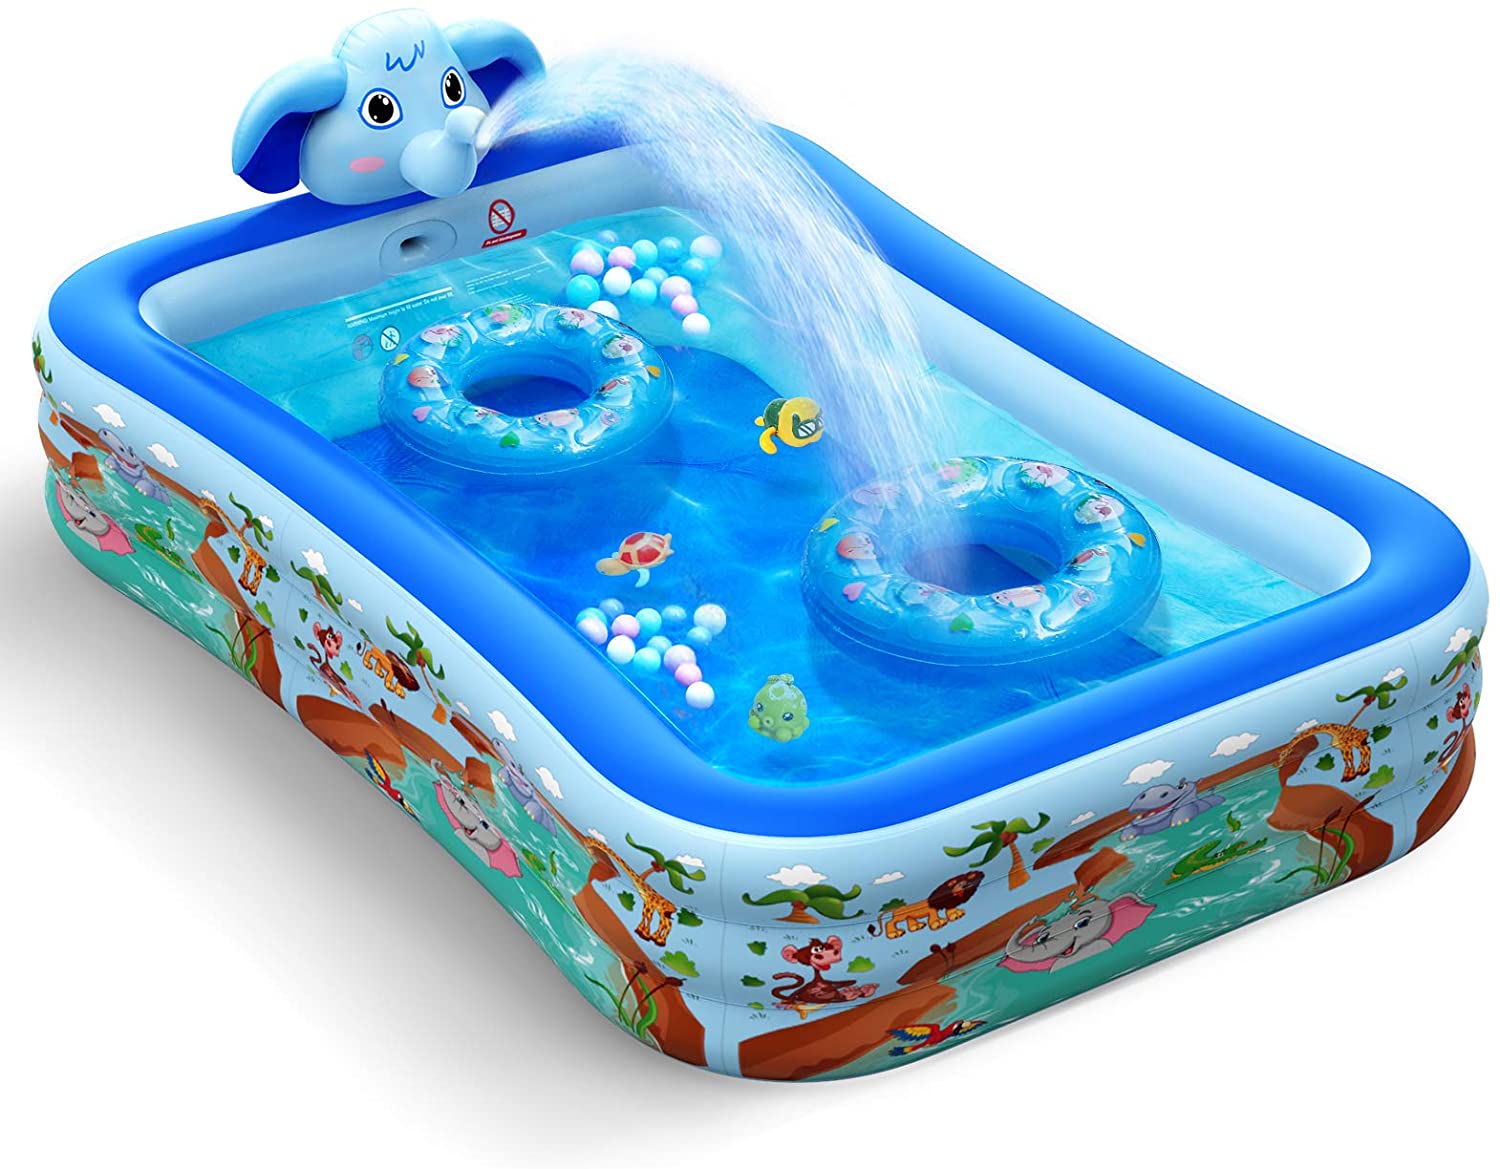 POOLPURE Inflatable Kiddie Swimming Pool Pool with Sprinkler 118X 72 X 20 F 